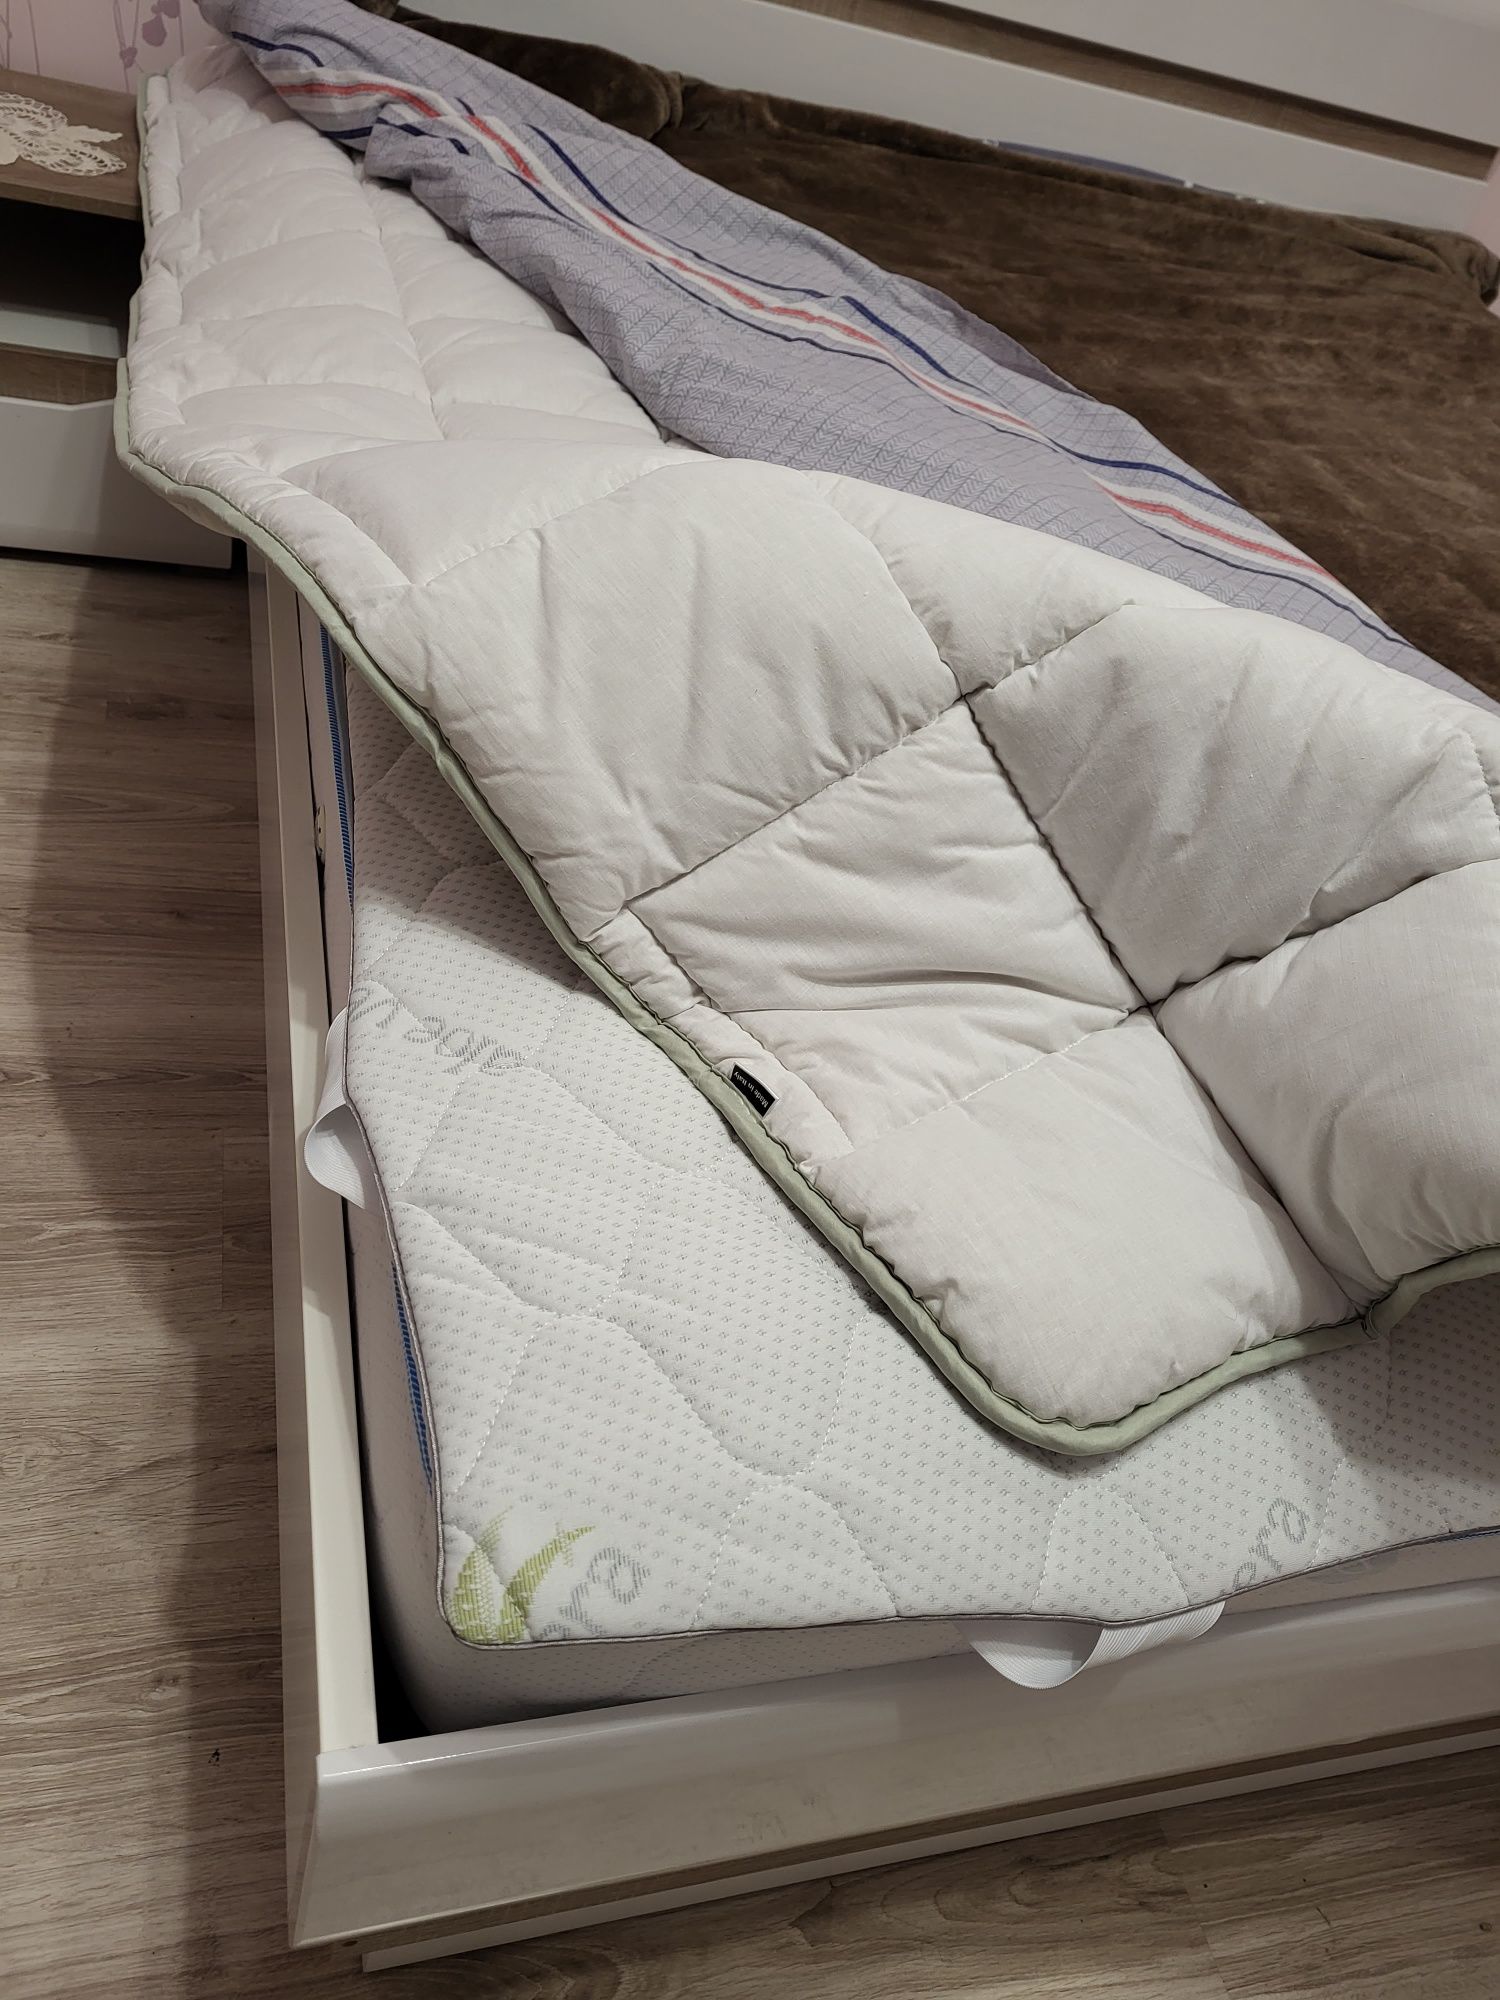 продам спалний гарнітур ліжко + матрац + наматрацник + одеяло овеч. ше